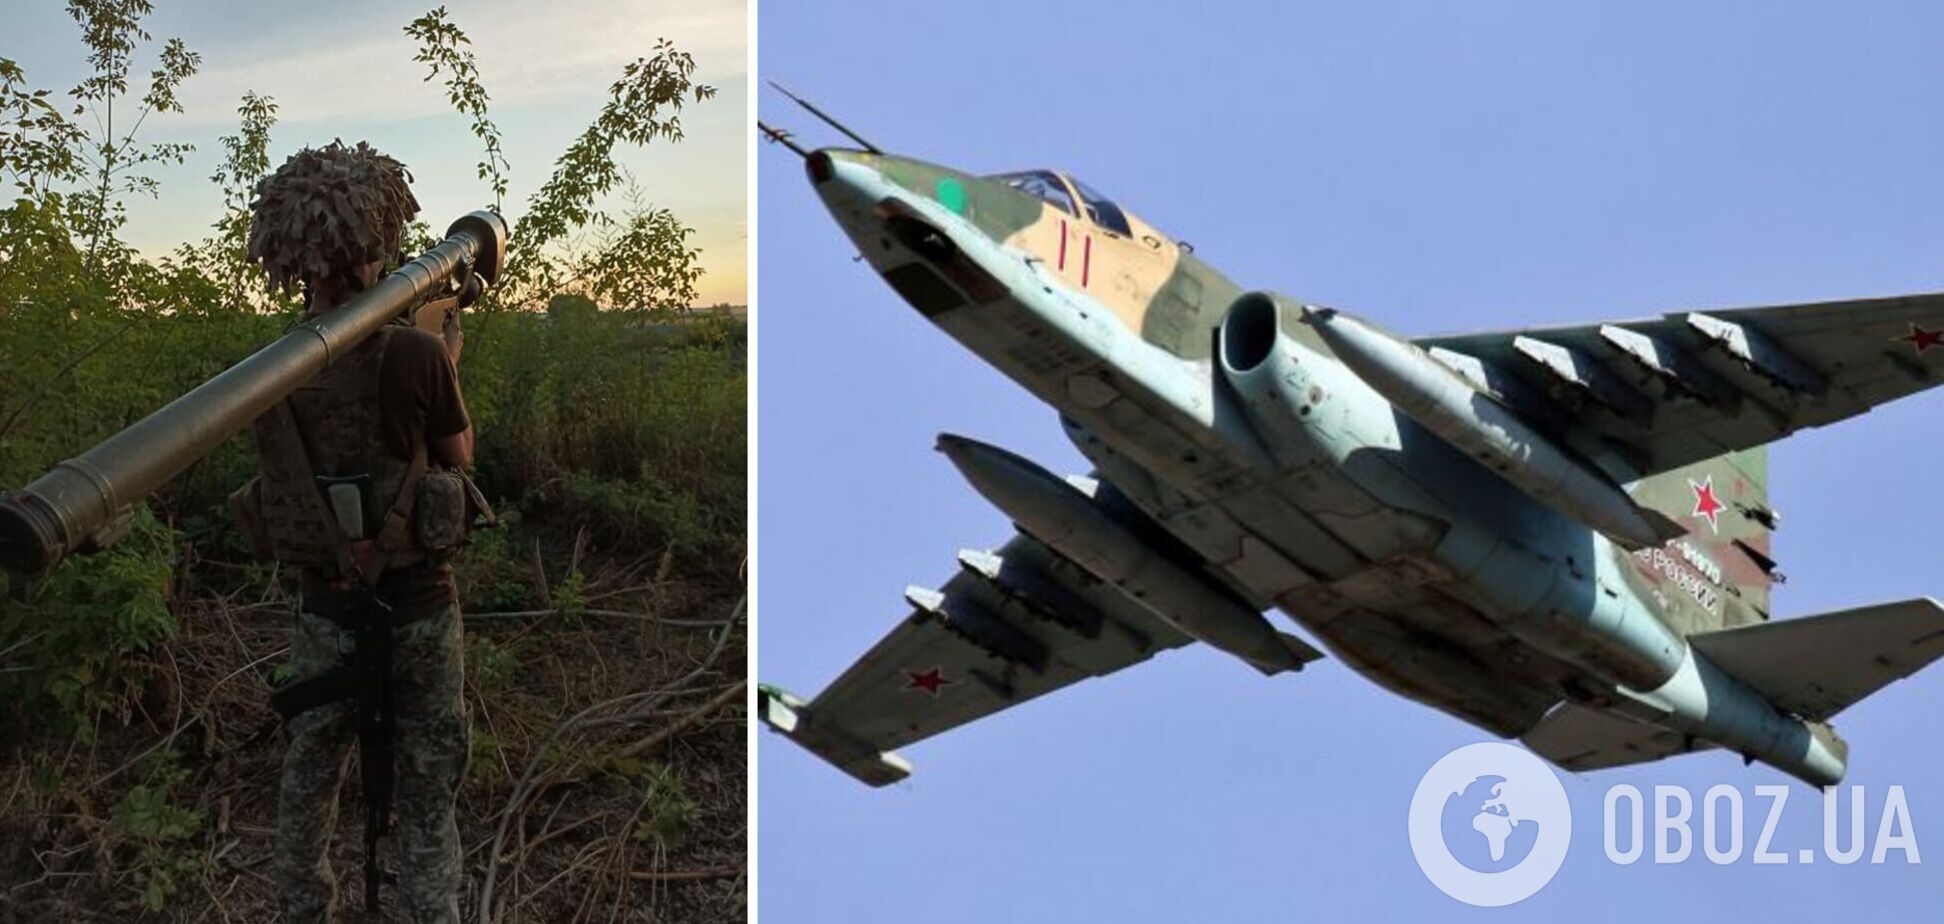 Три российских 'птички' за сутки: сечеславские десантники 'демилитаризовали' еще один Су-25